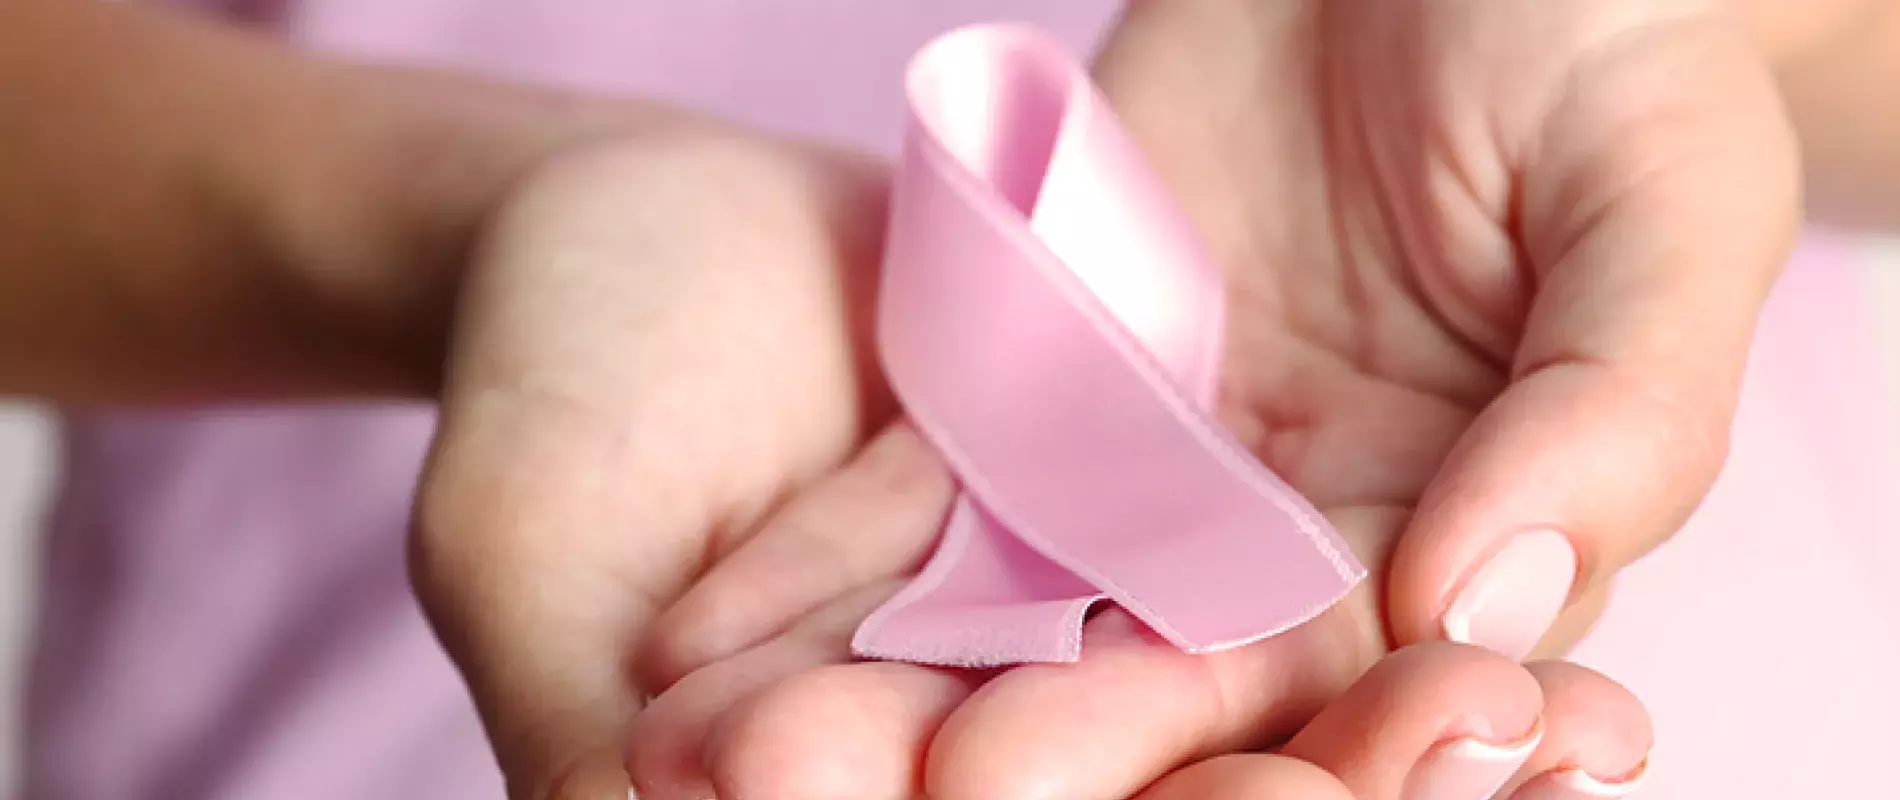 Cancer du sein chez les senior  Symptome 60, 70 ans Aide à domicile